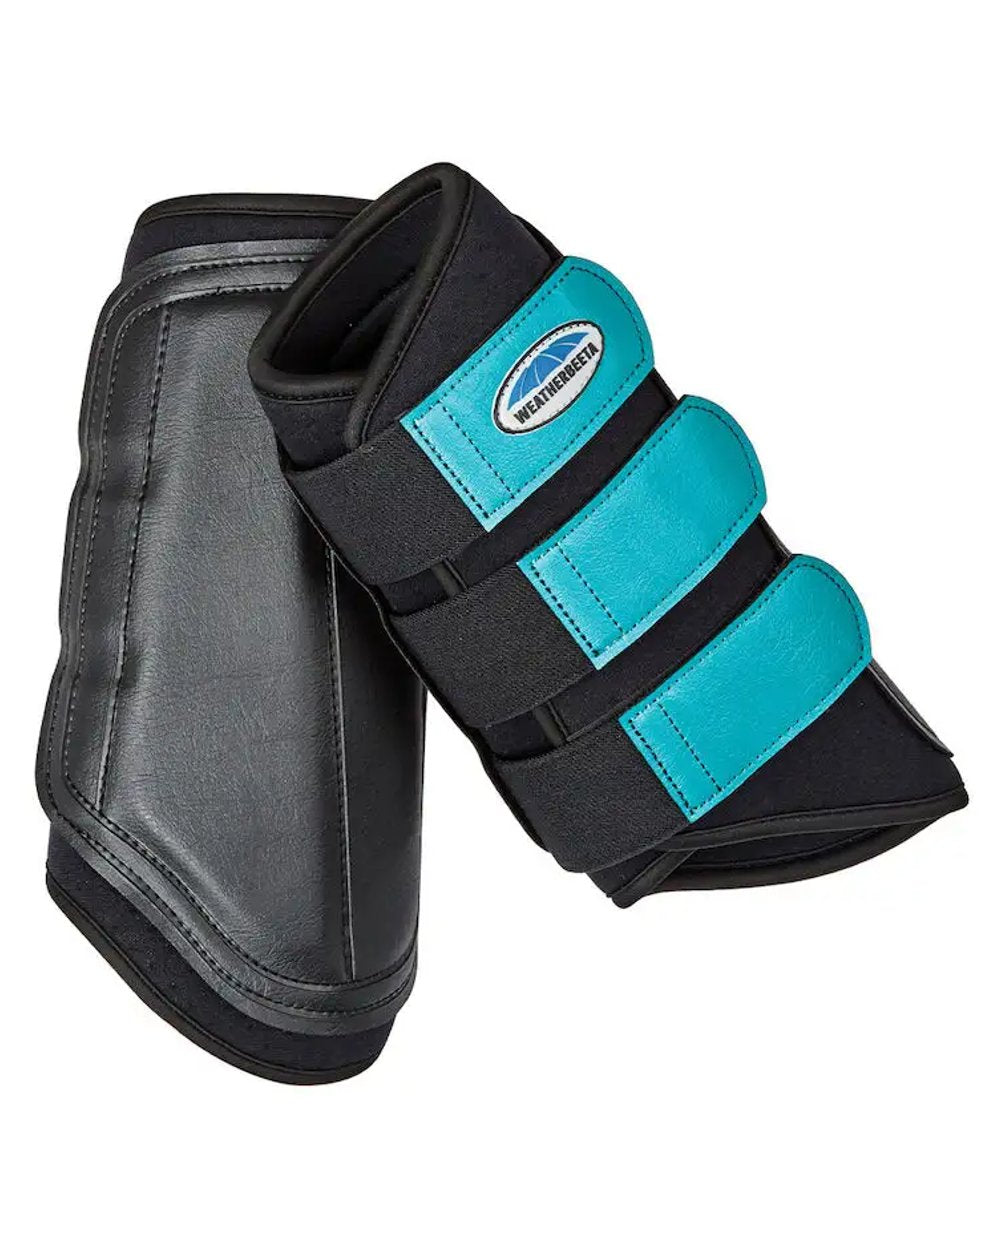 Black Turquoise coloured WeatherBeeta Single Lock Brushing Boots on white background 